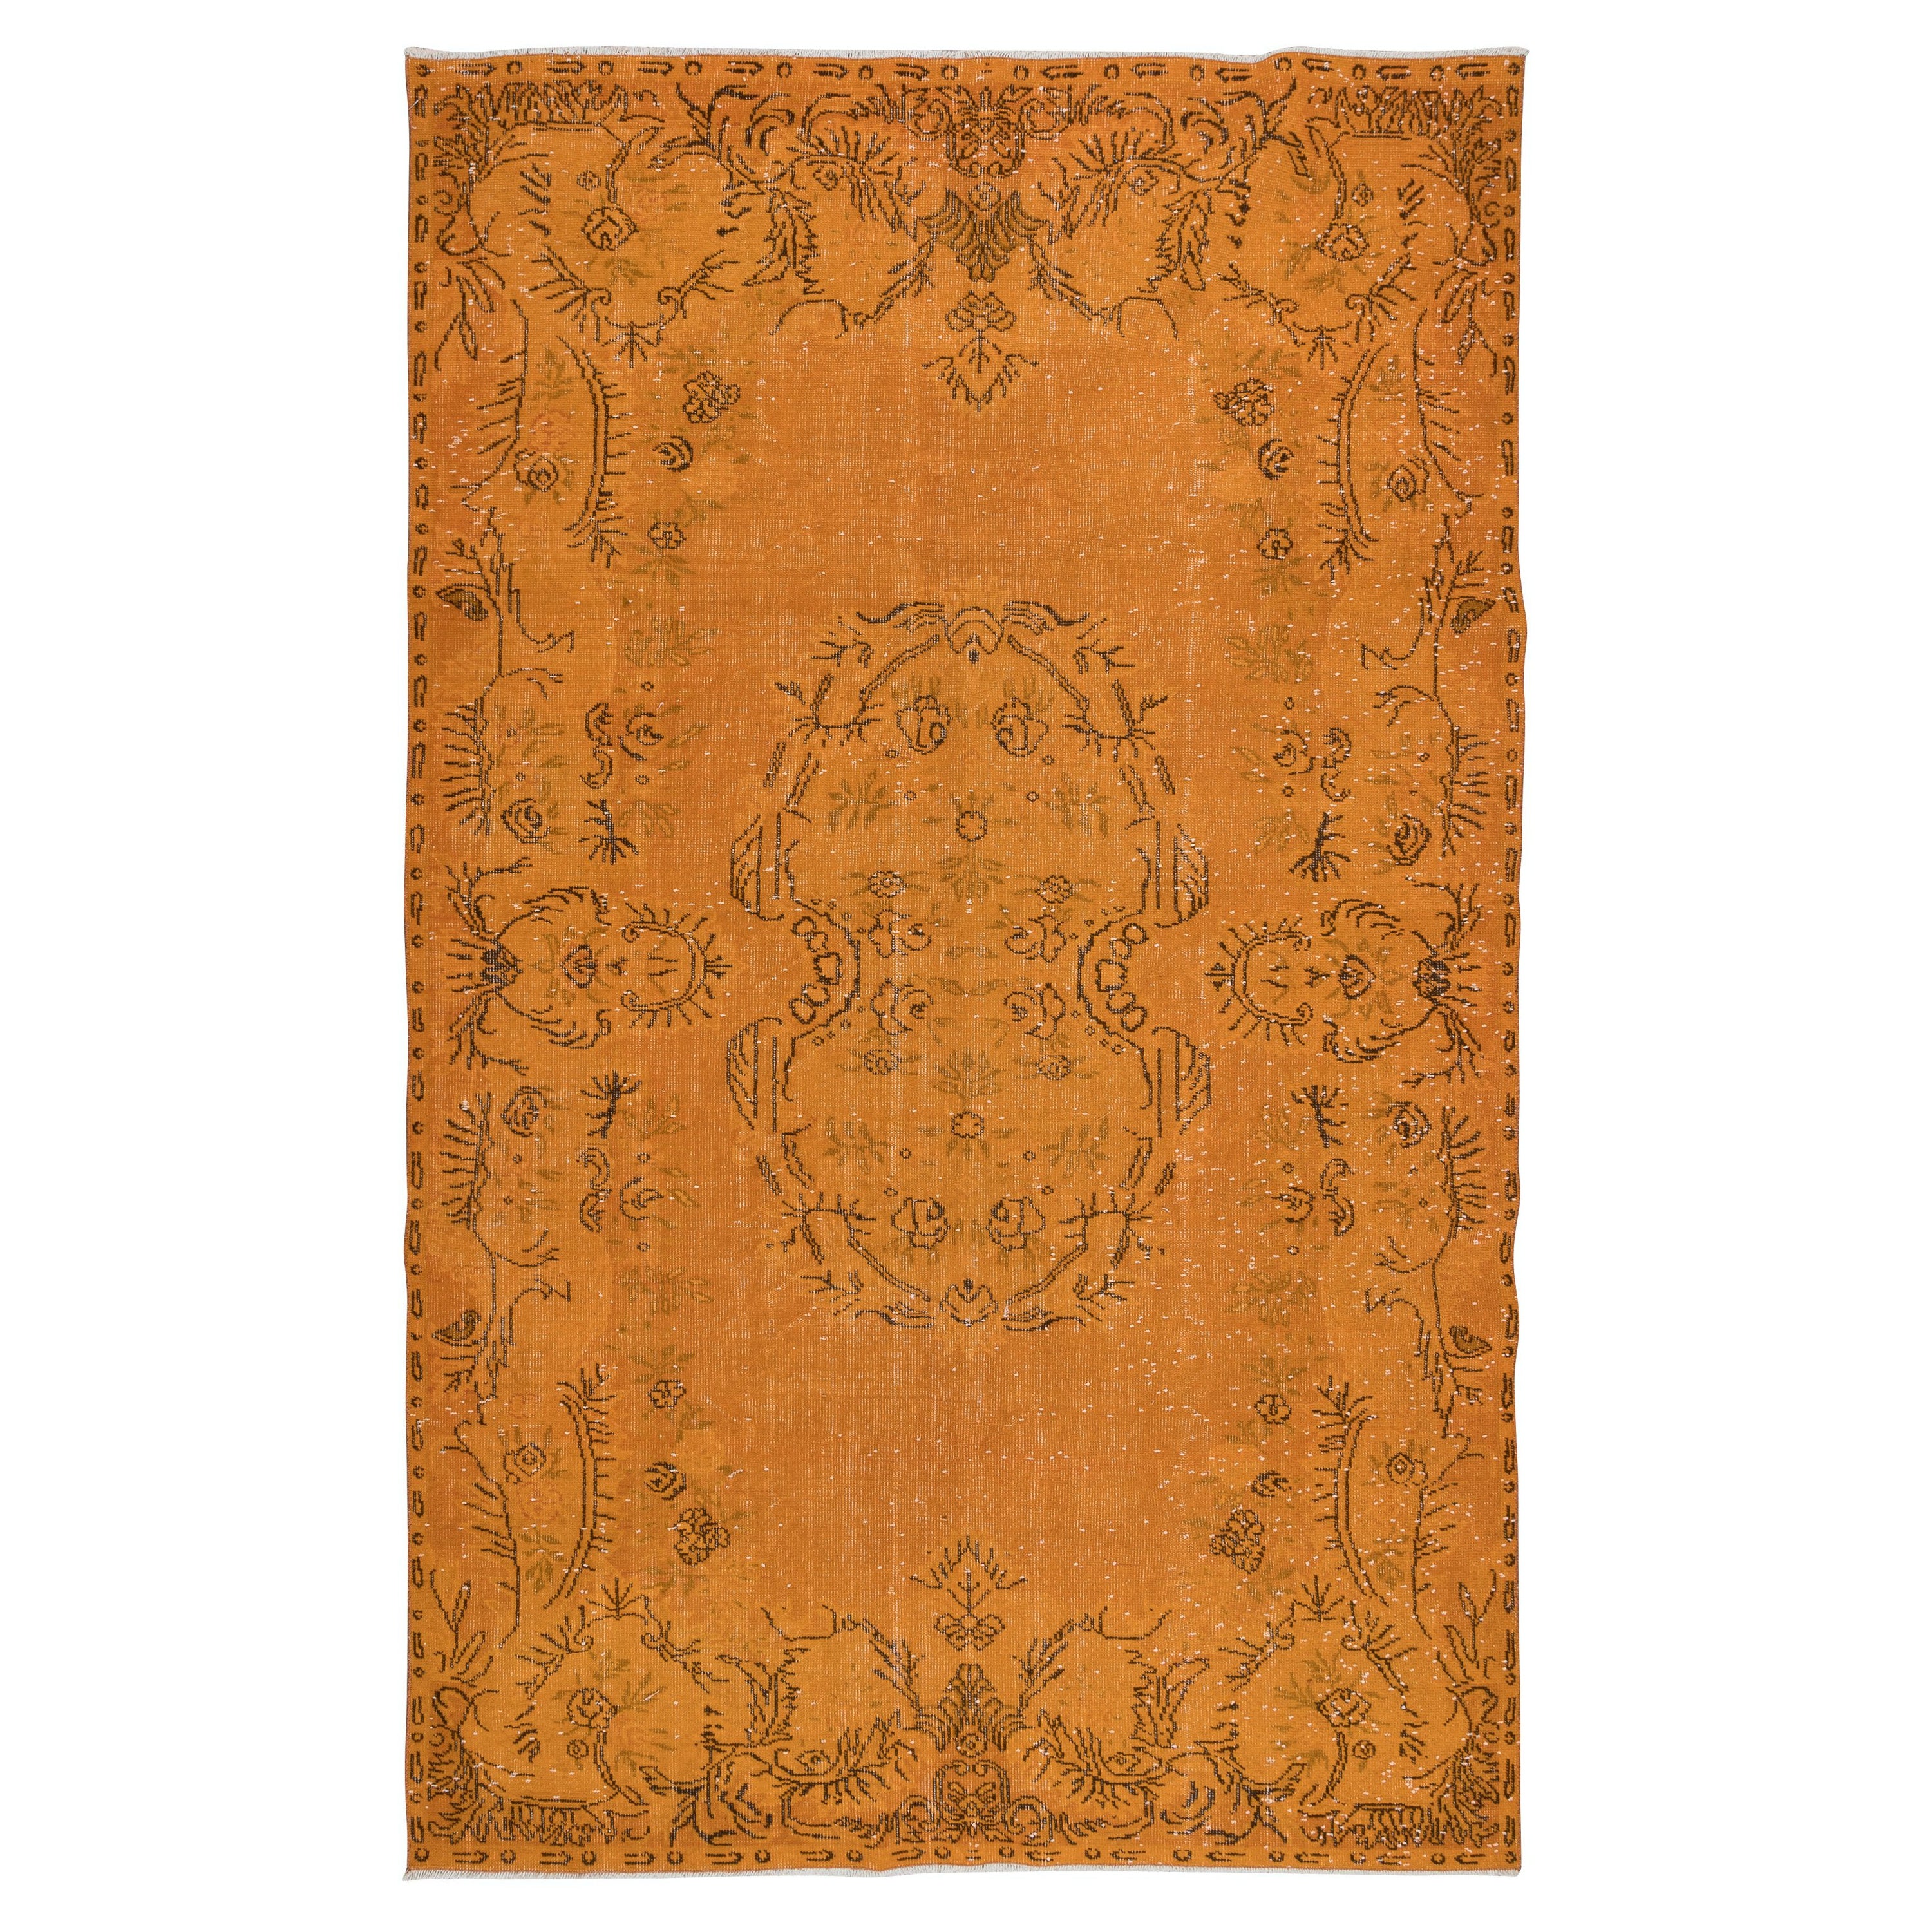 6x10 Ft Aubusson inspirierter orangefarbener Teppich für moderne Inneneinrichtung, handgefertigt in der Türkei